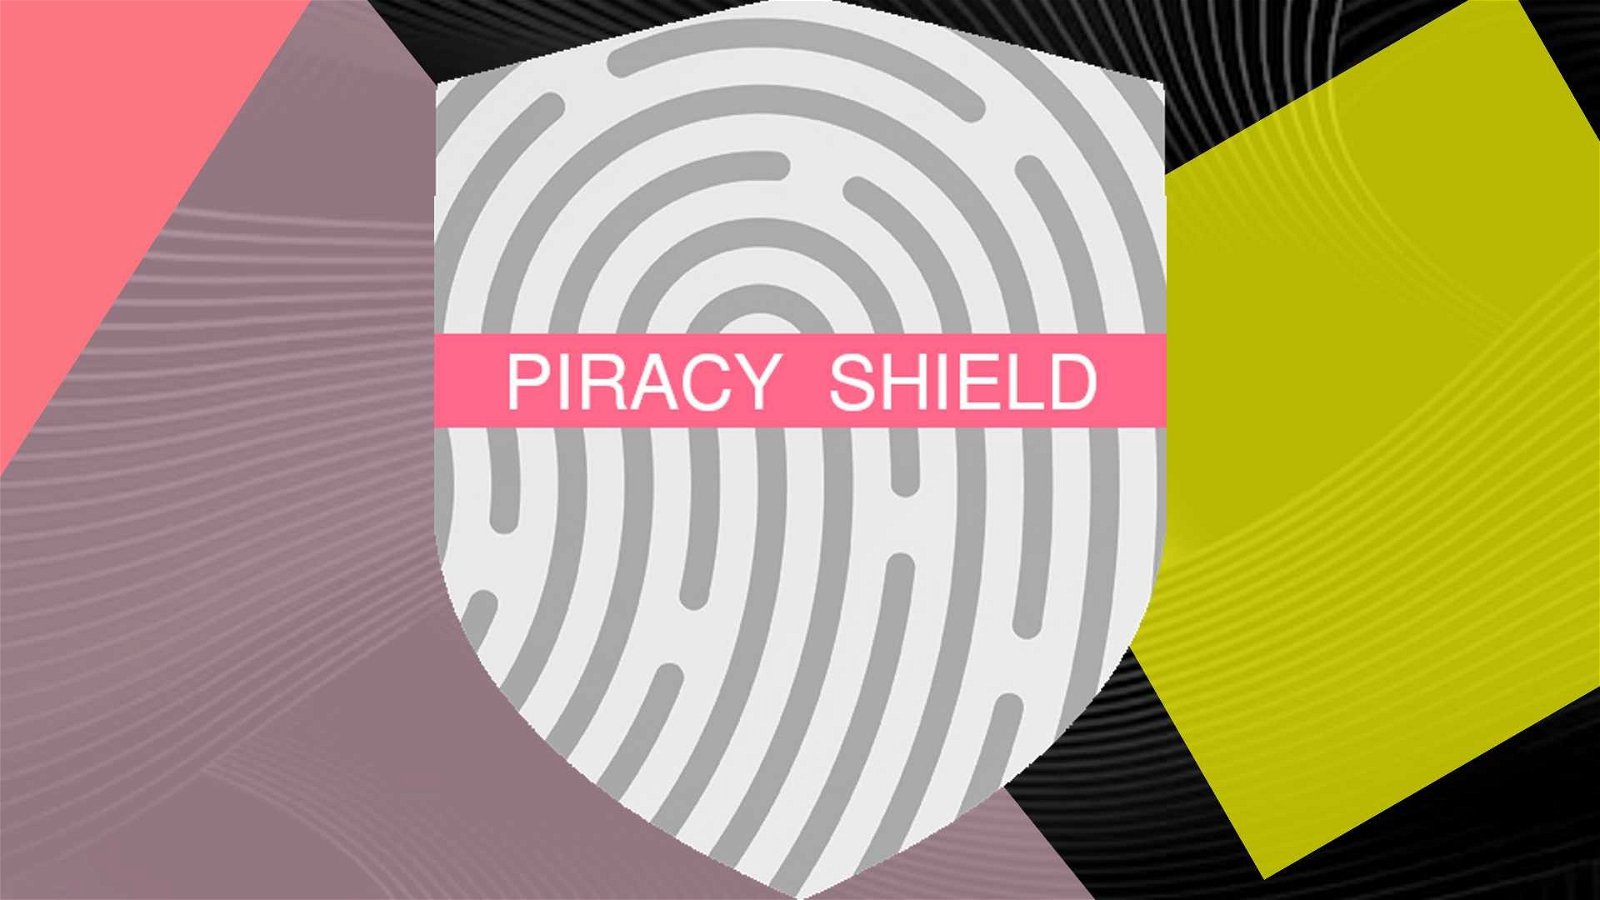 Immagine di Piracy Shield ancora nei guai, arriva l'interrogazione dei consumatori